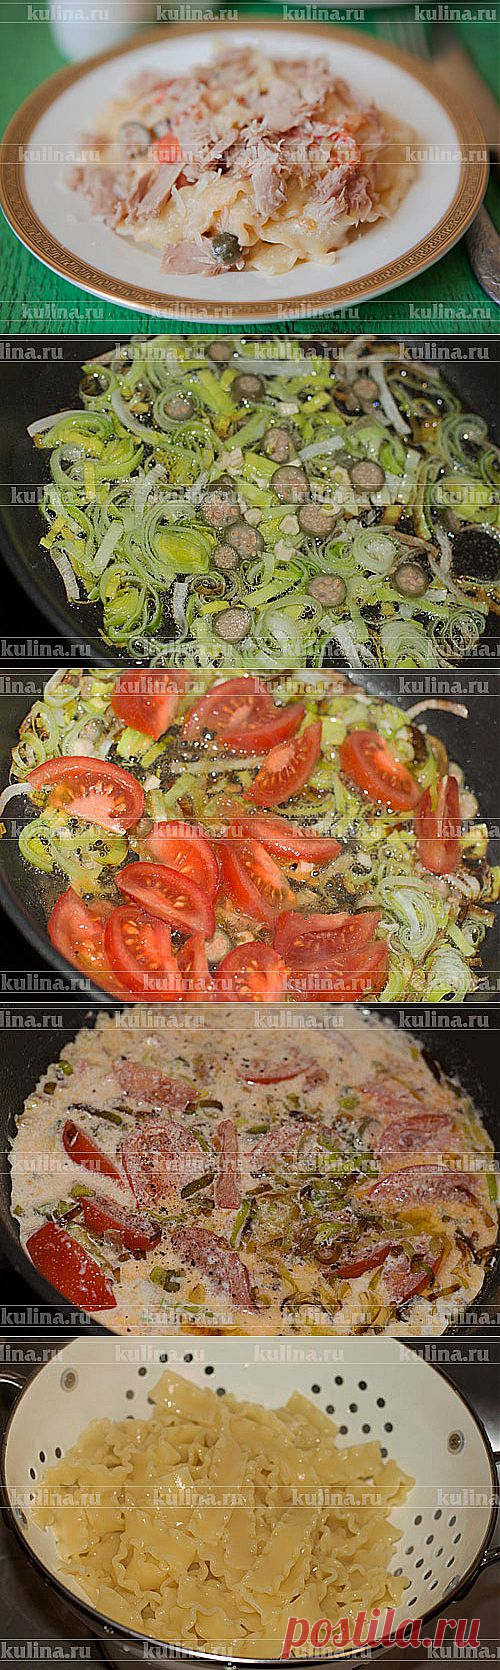 Паста с овощами и тунцом – рецепт приготовления с фото от Kulina.Ru